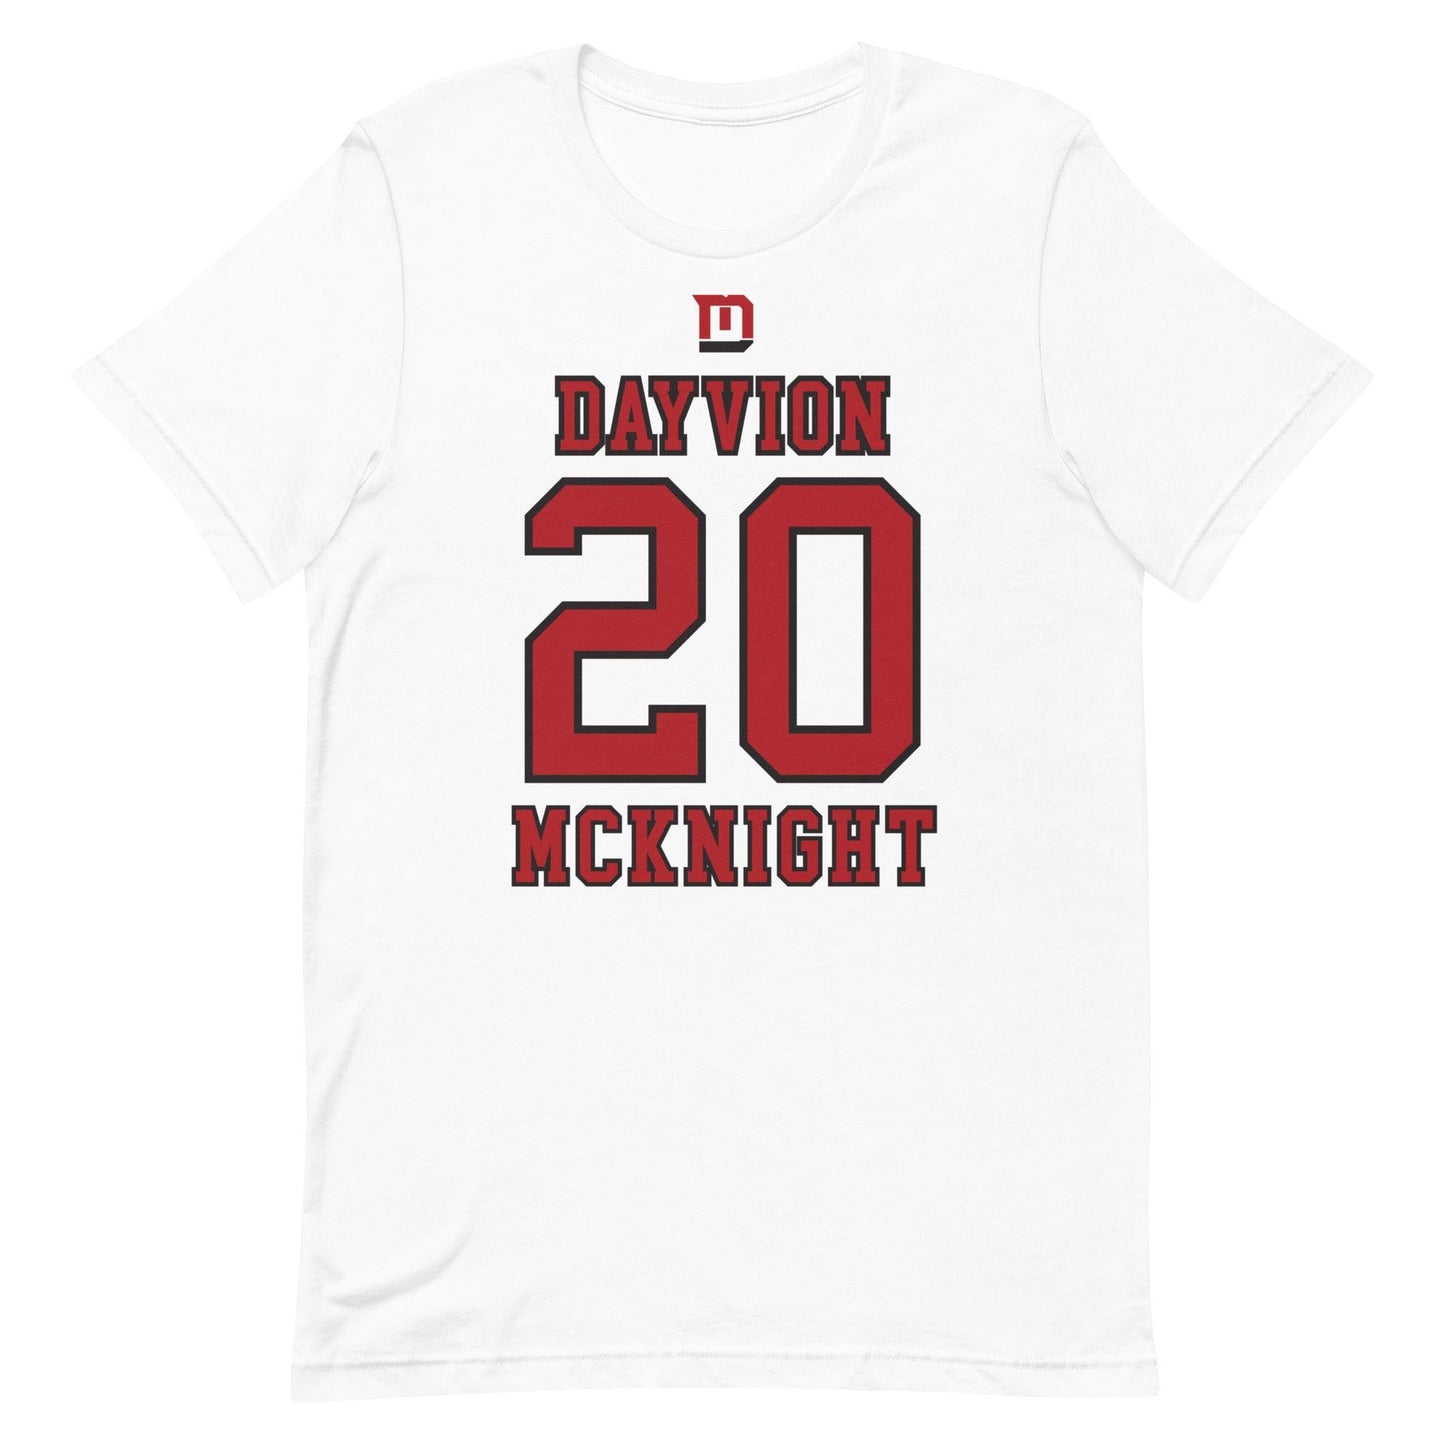 Dayvion McKnight "Jersey" t-shirt - Fan Arch